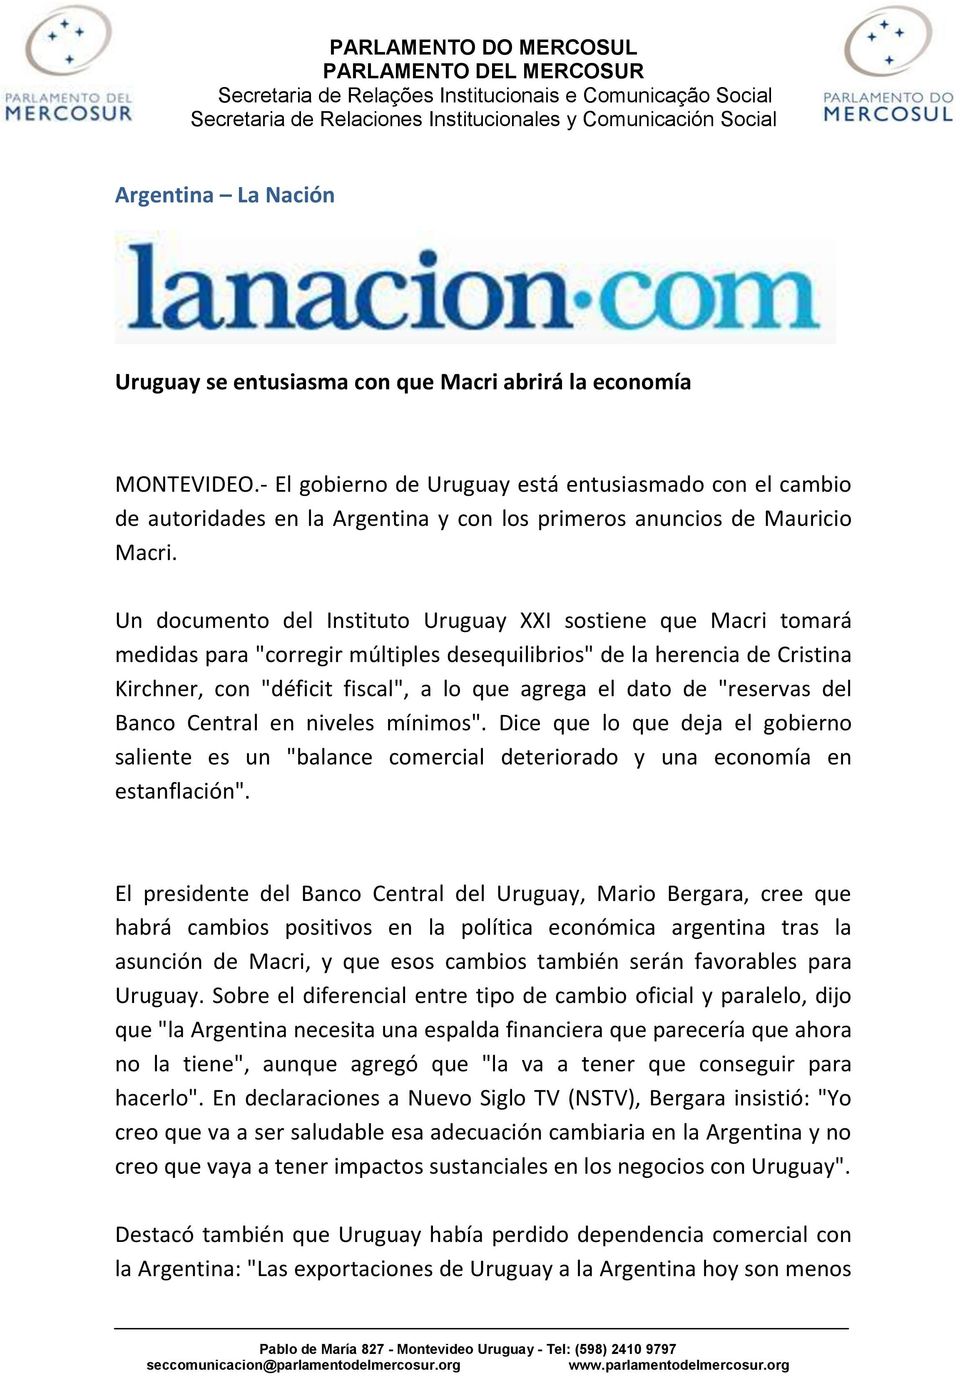 Un documento del Instituto Uruguay XXI sostiene que Macri tomará medidas para "corregir múltiples desequilibrios" de la herencia de Cristina Kirchner, con "déficit fiscal", a lo que agrega el dato de